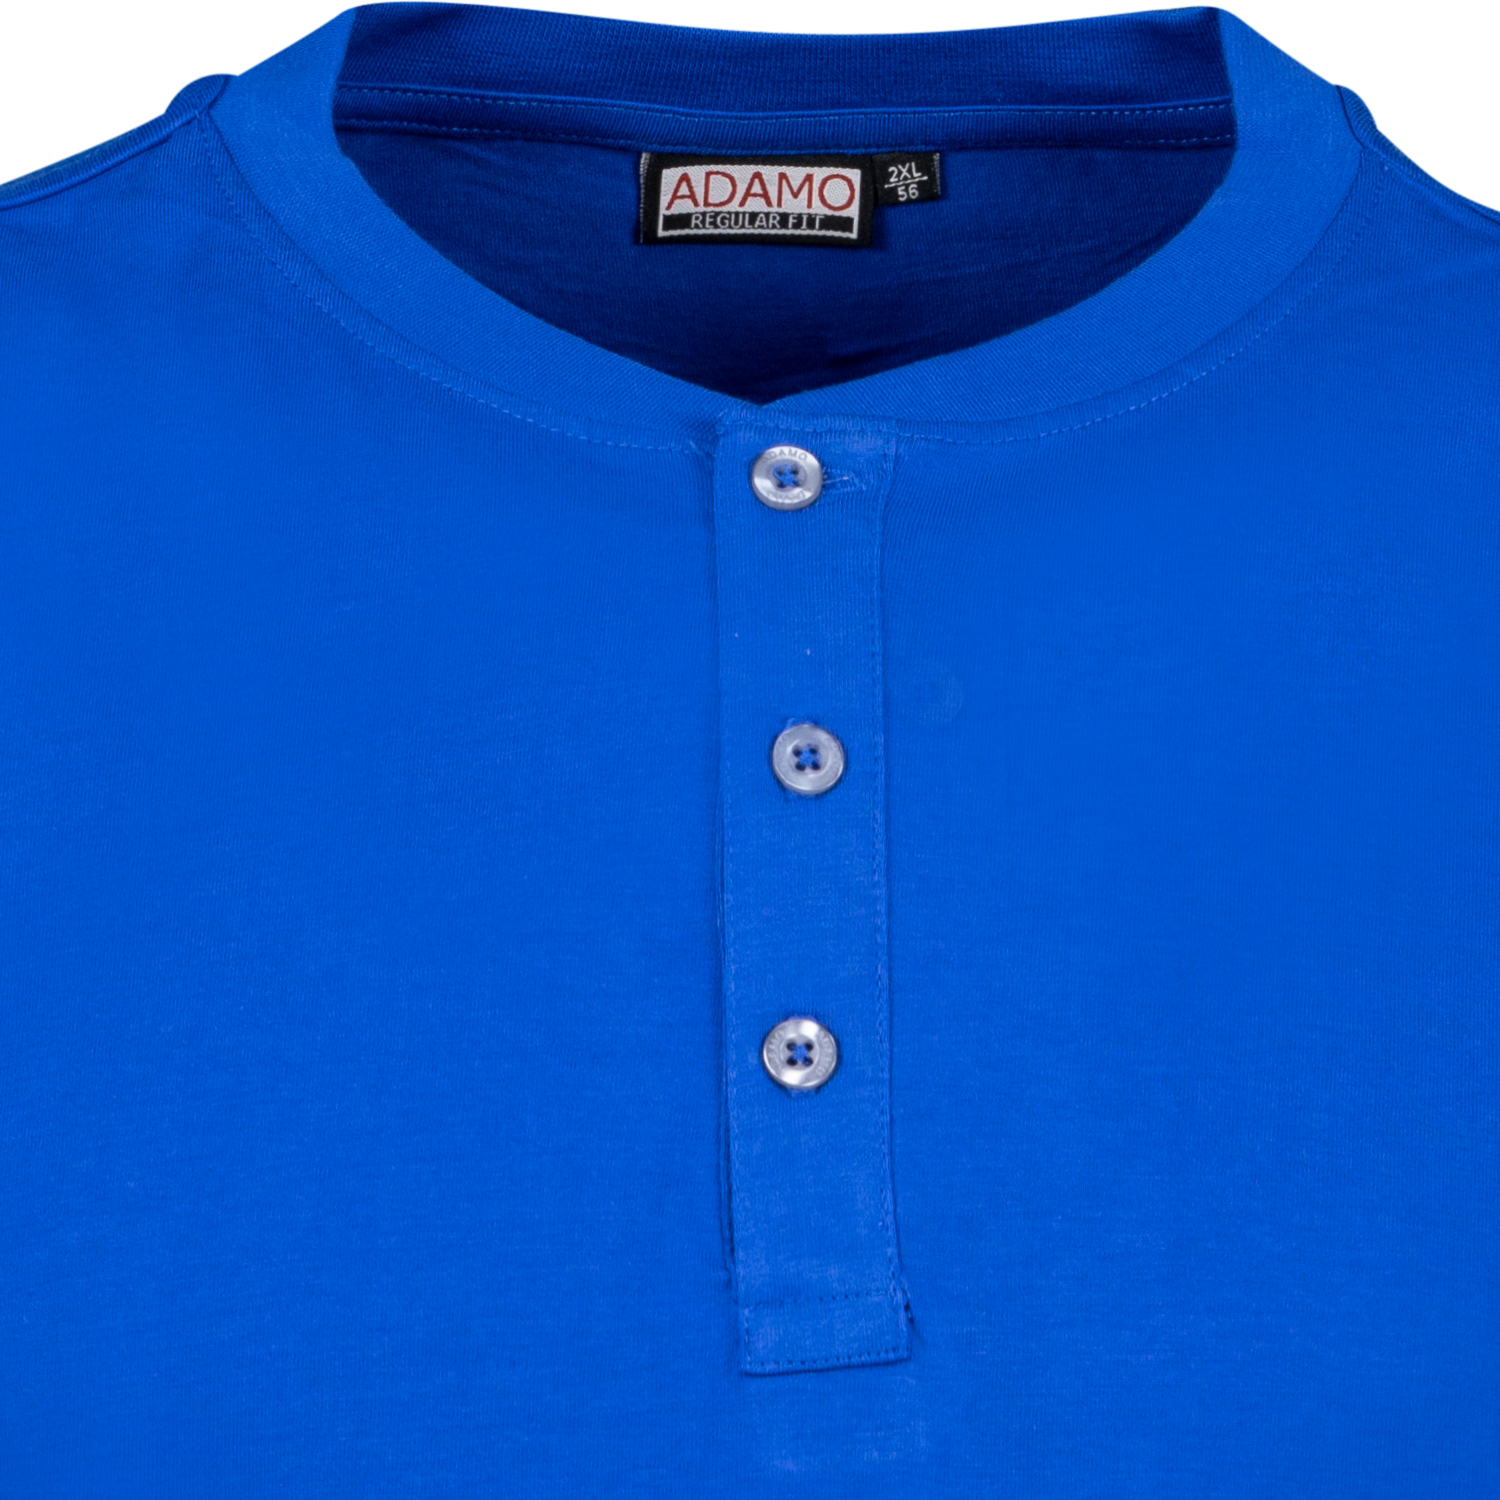 T-shirt série SILAS by ADAMO jusqu'à la grande taille 10XL - couleur: bleu royal